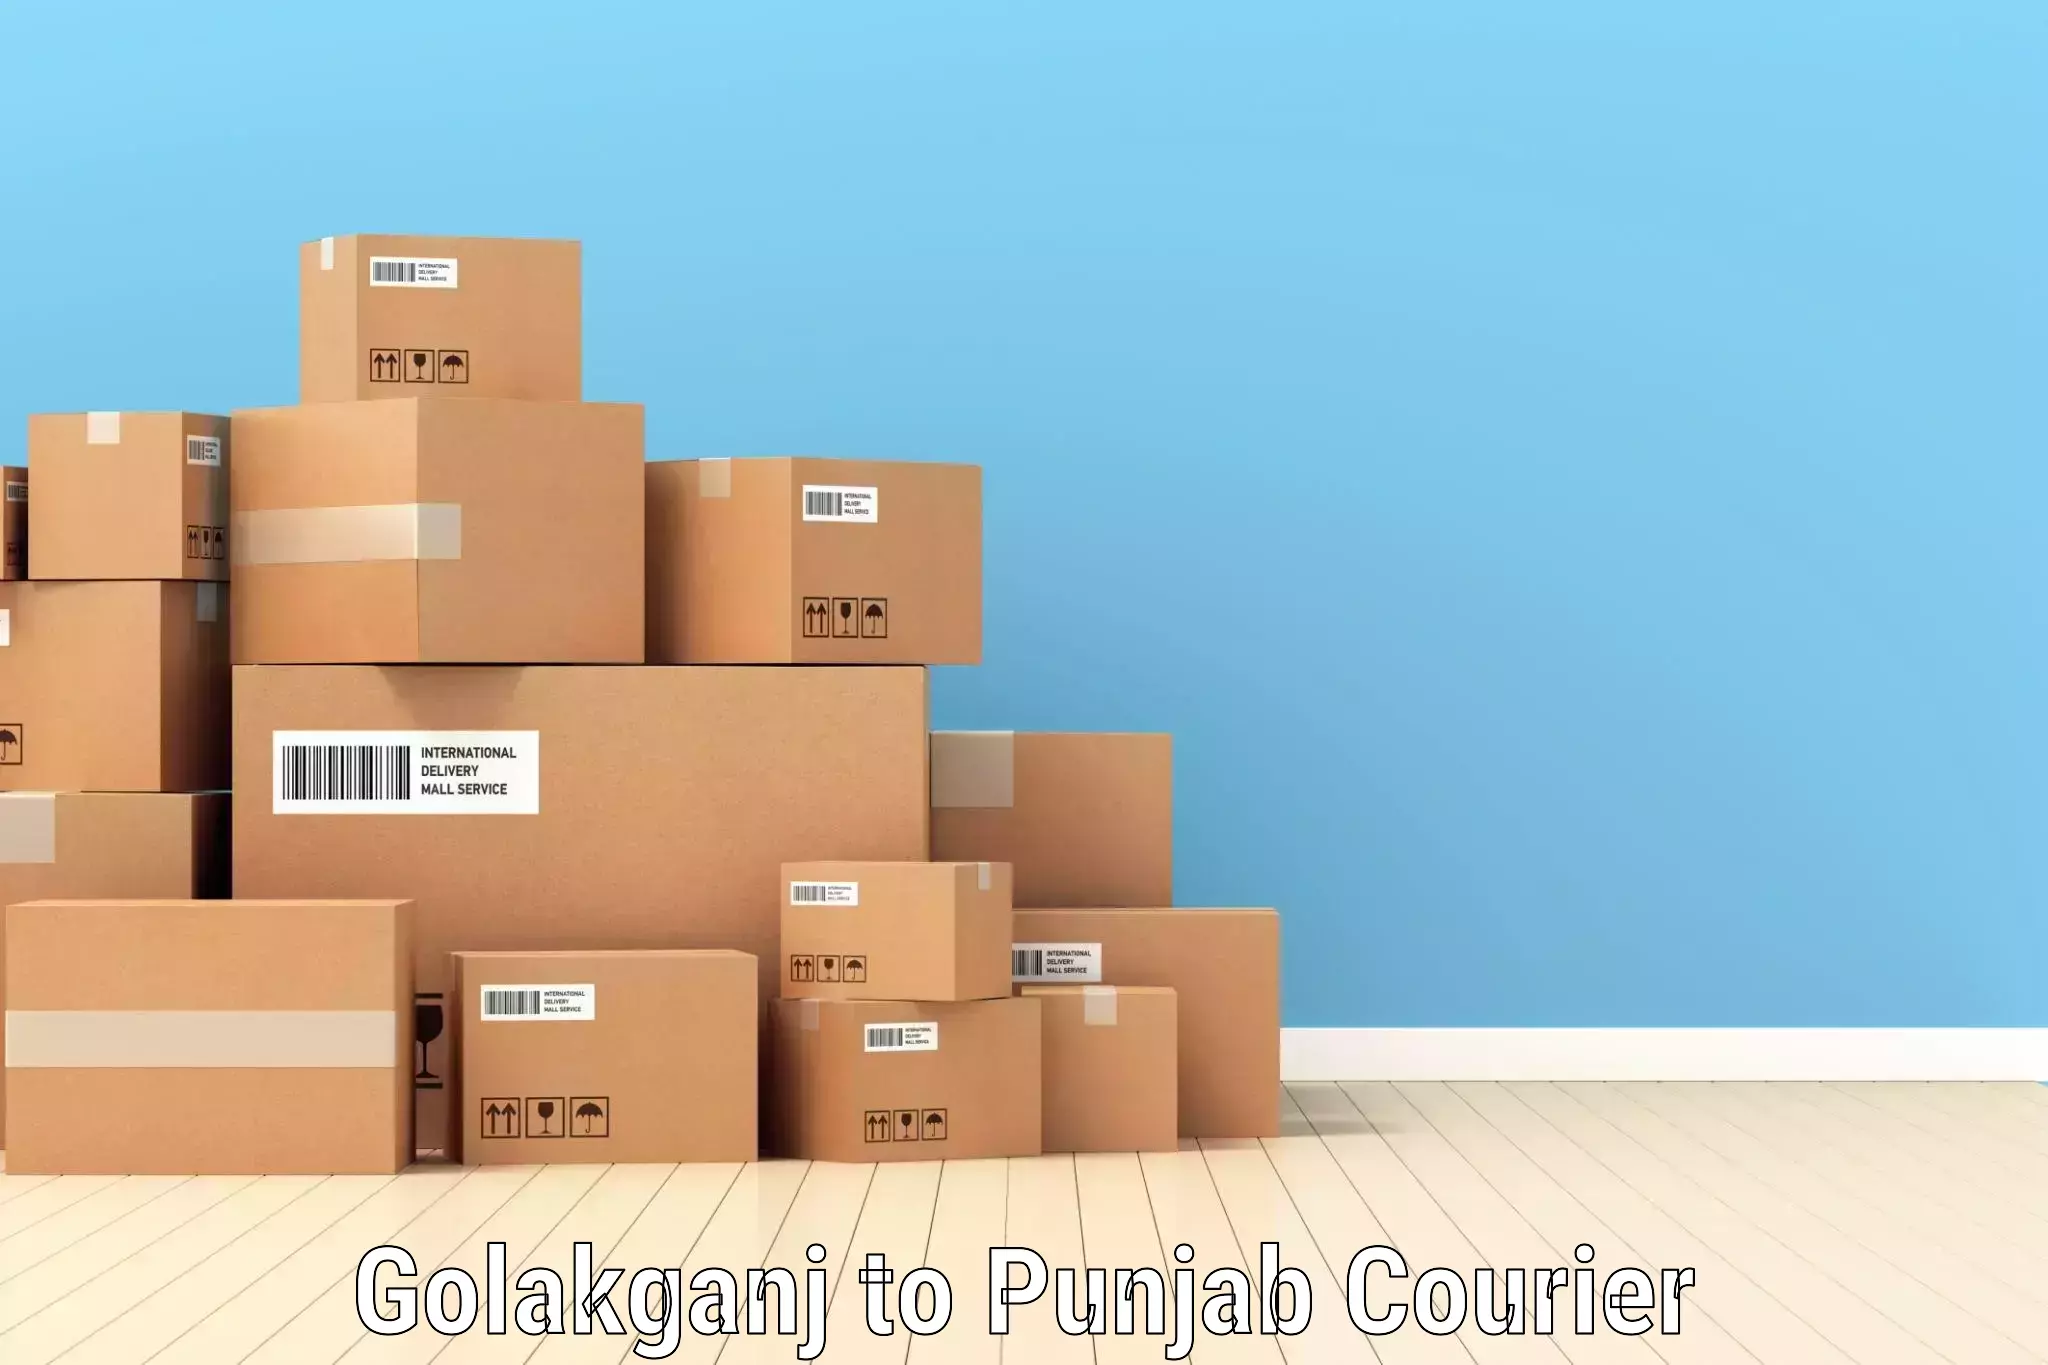 Efficient logistics management Golakganj to Zirakpur